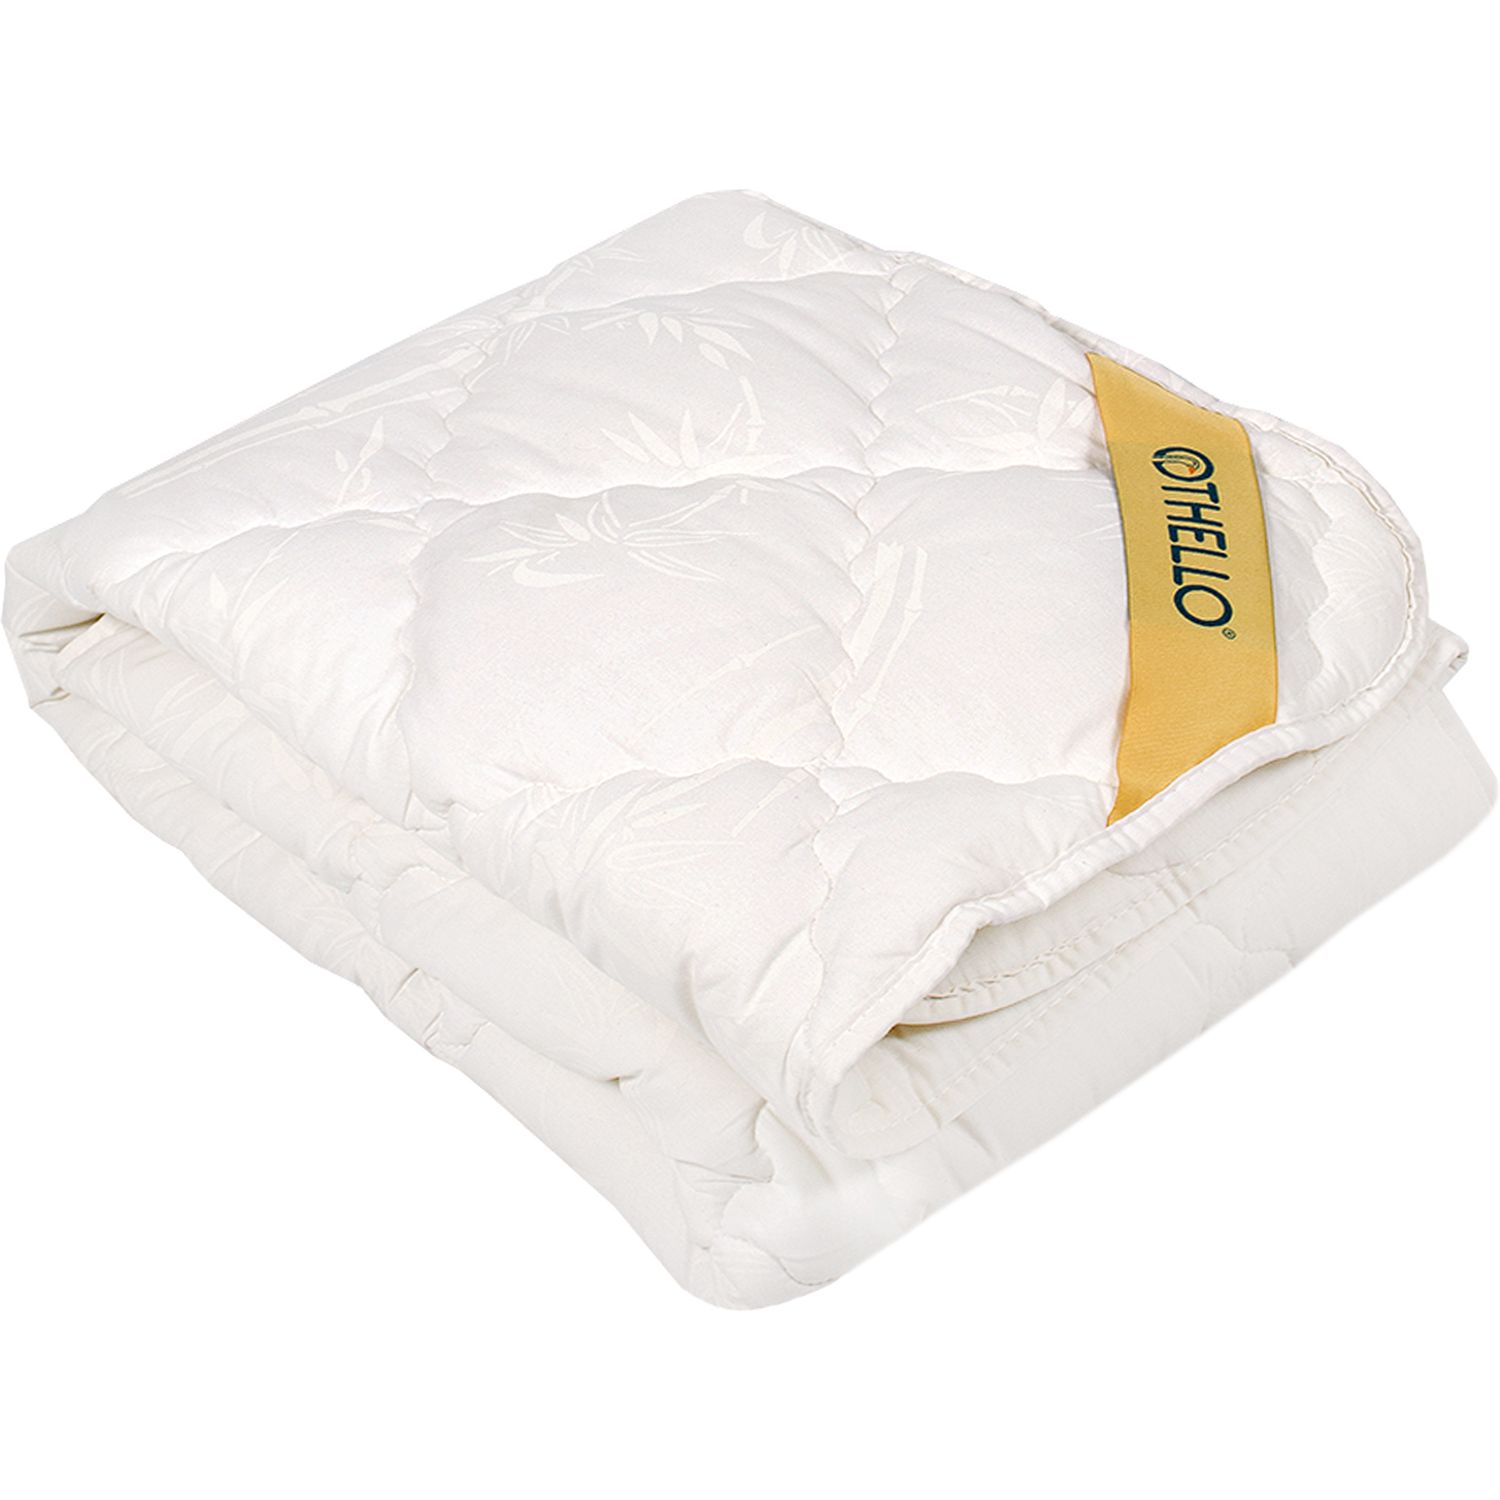 Детcкое одеяло Othello Bambina, антиаллергенное, 145х95 см, белый (2000022173988) - фото 1